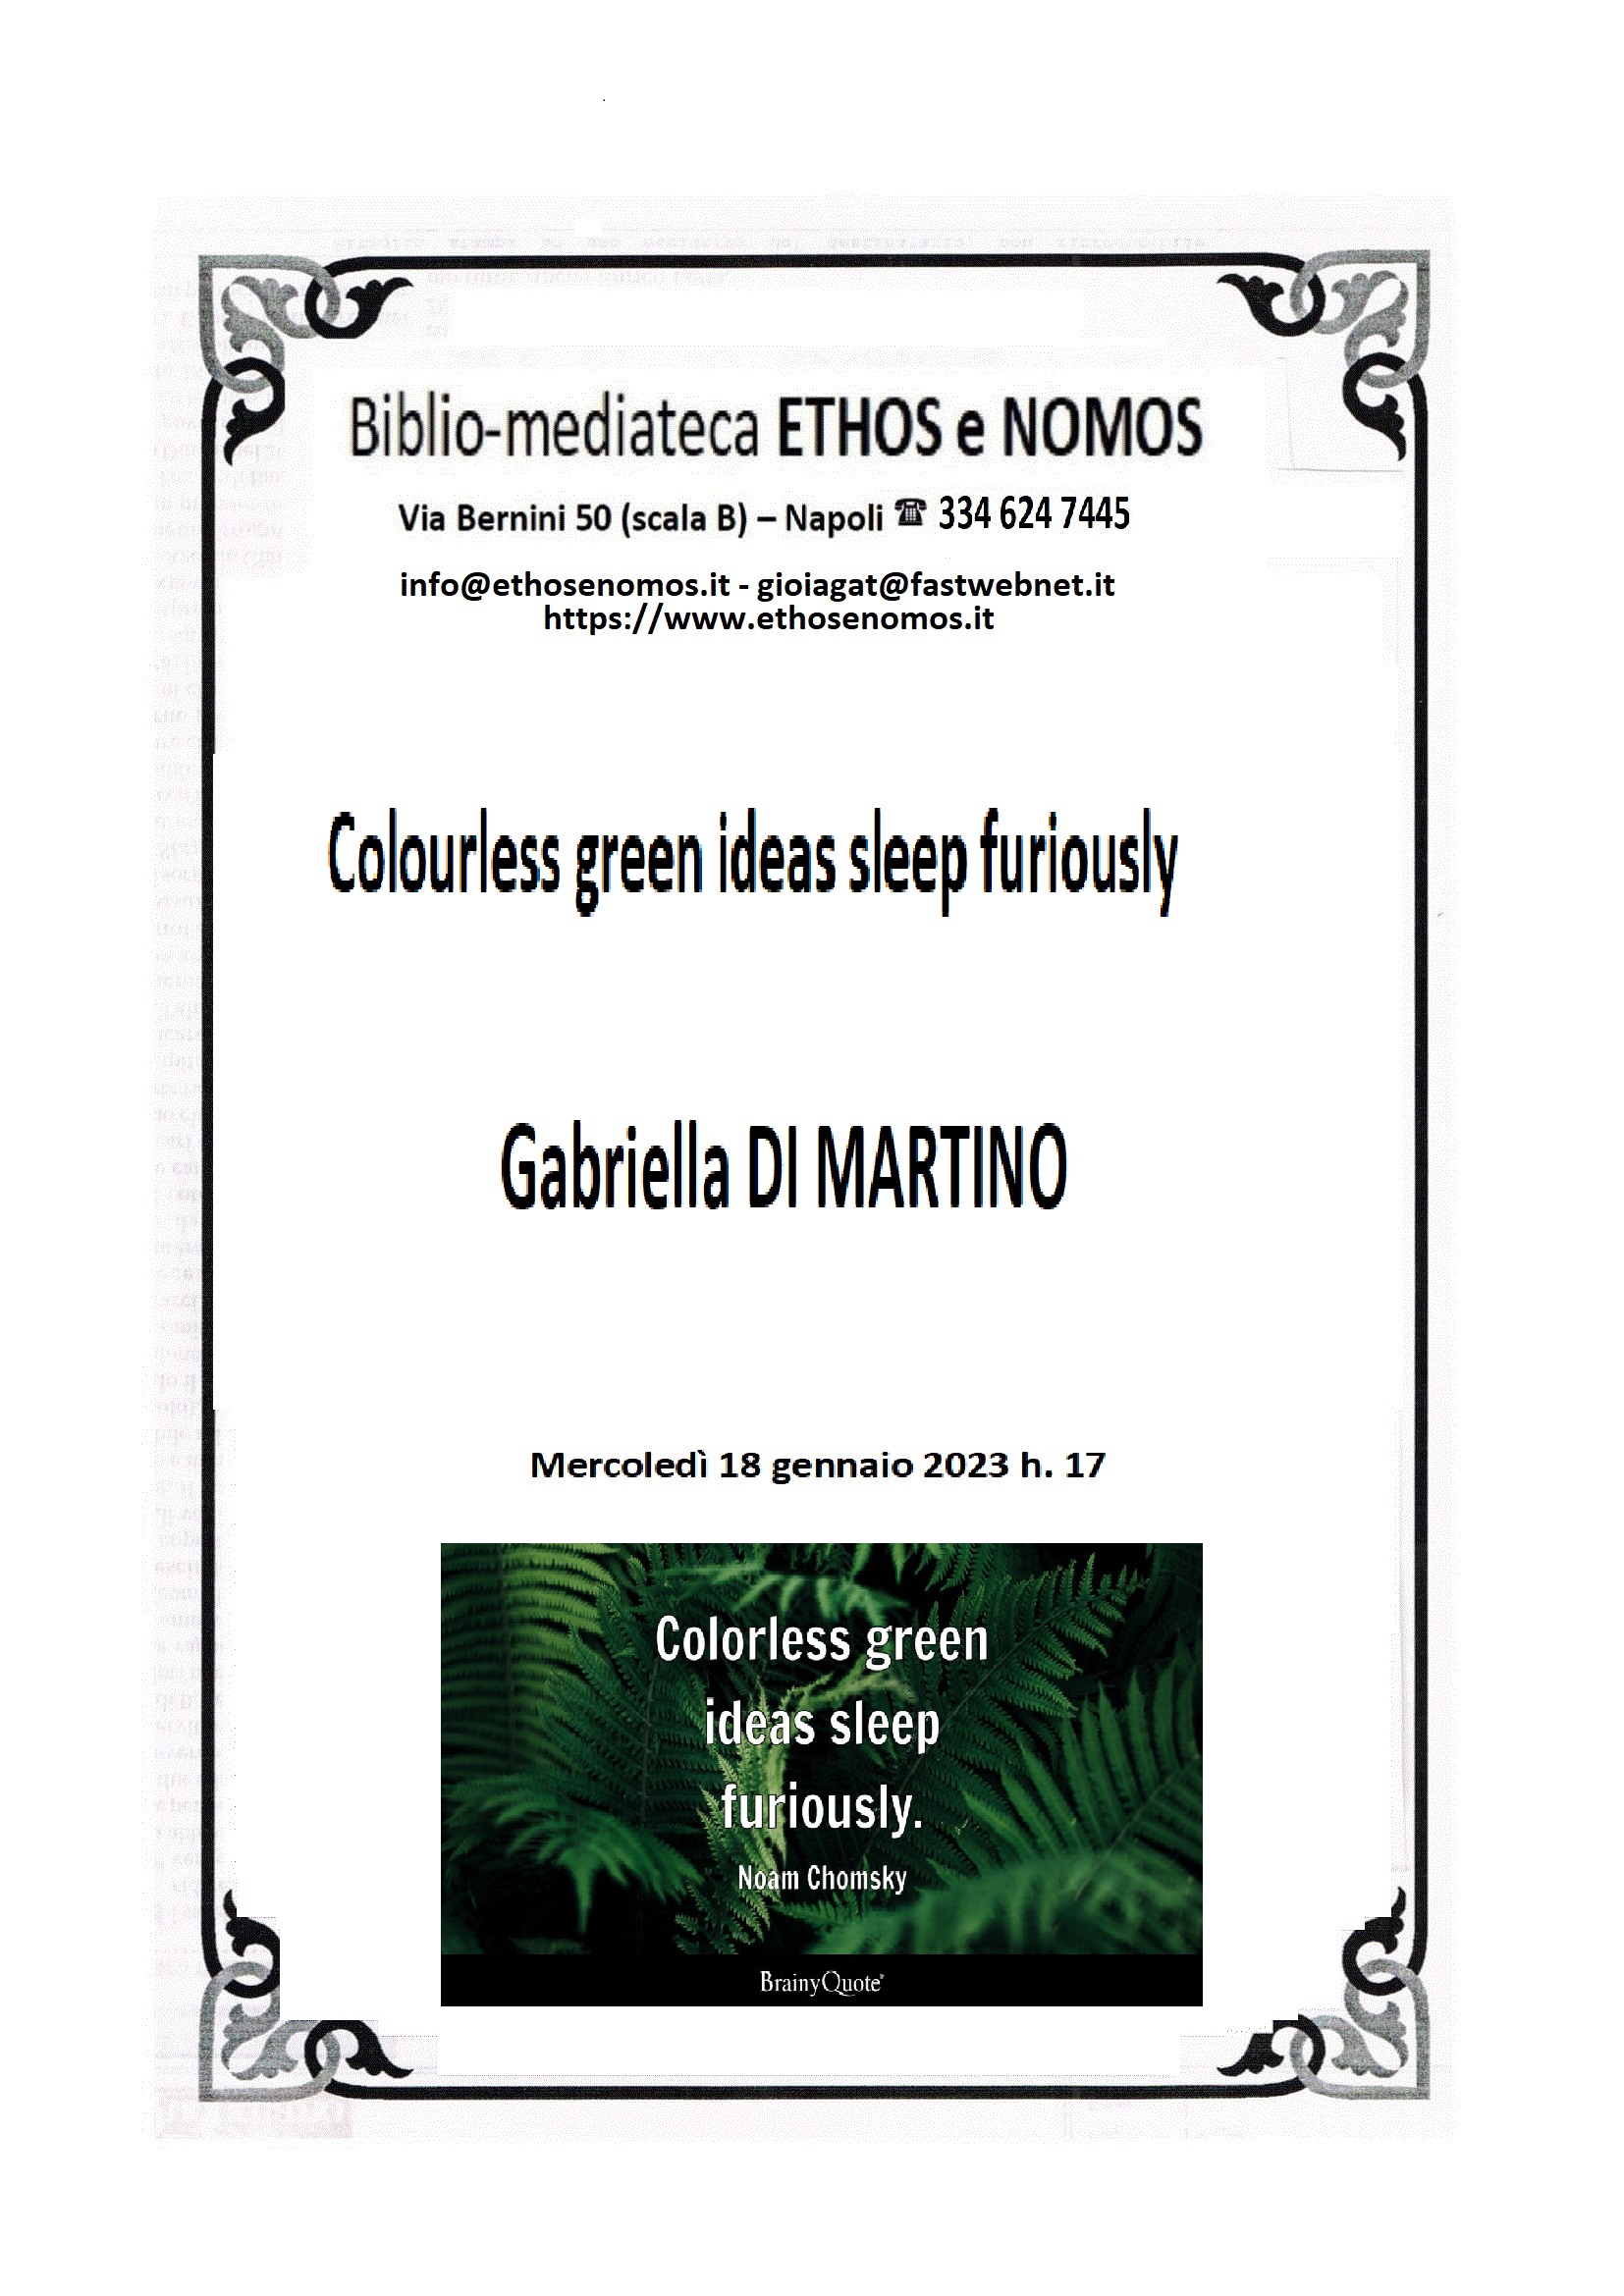 Gabriella  DI MARTINO - "Colourless green ideas sleep furiously"